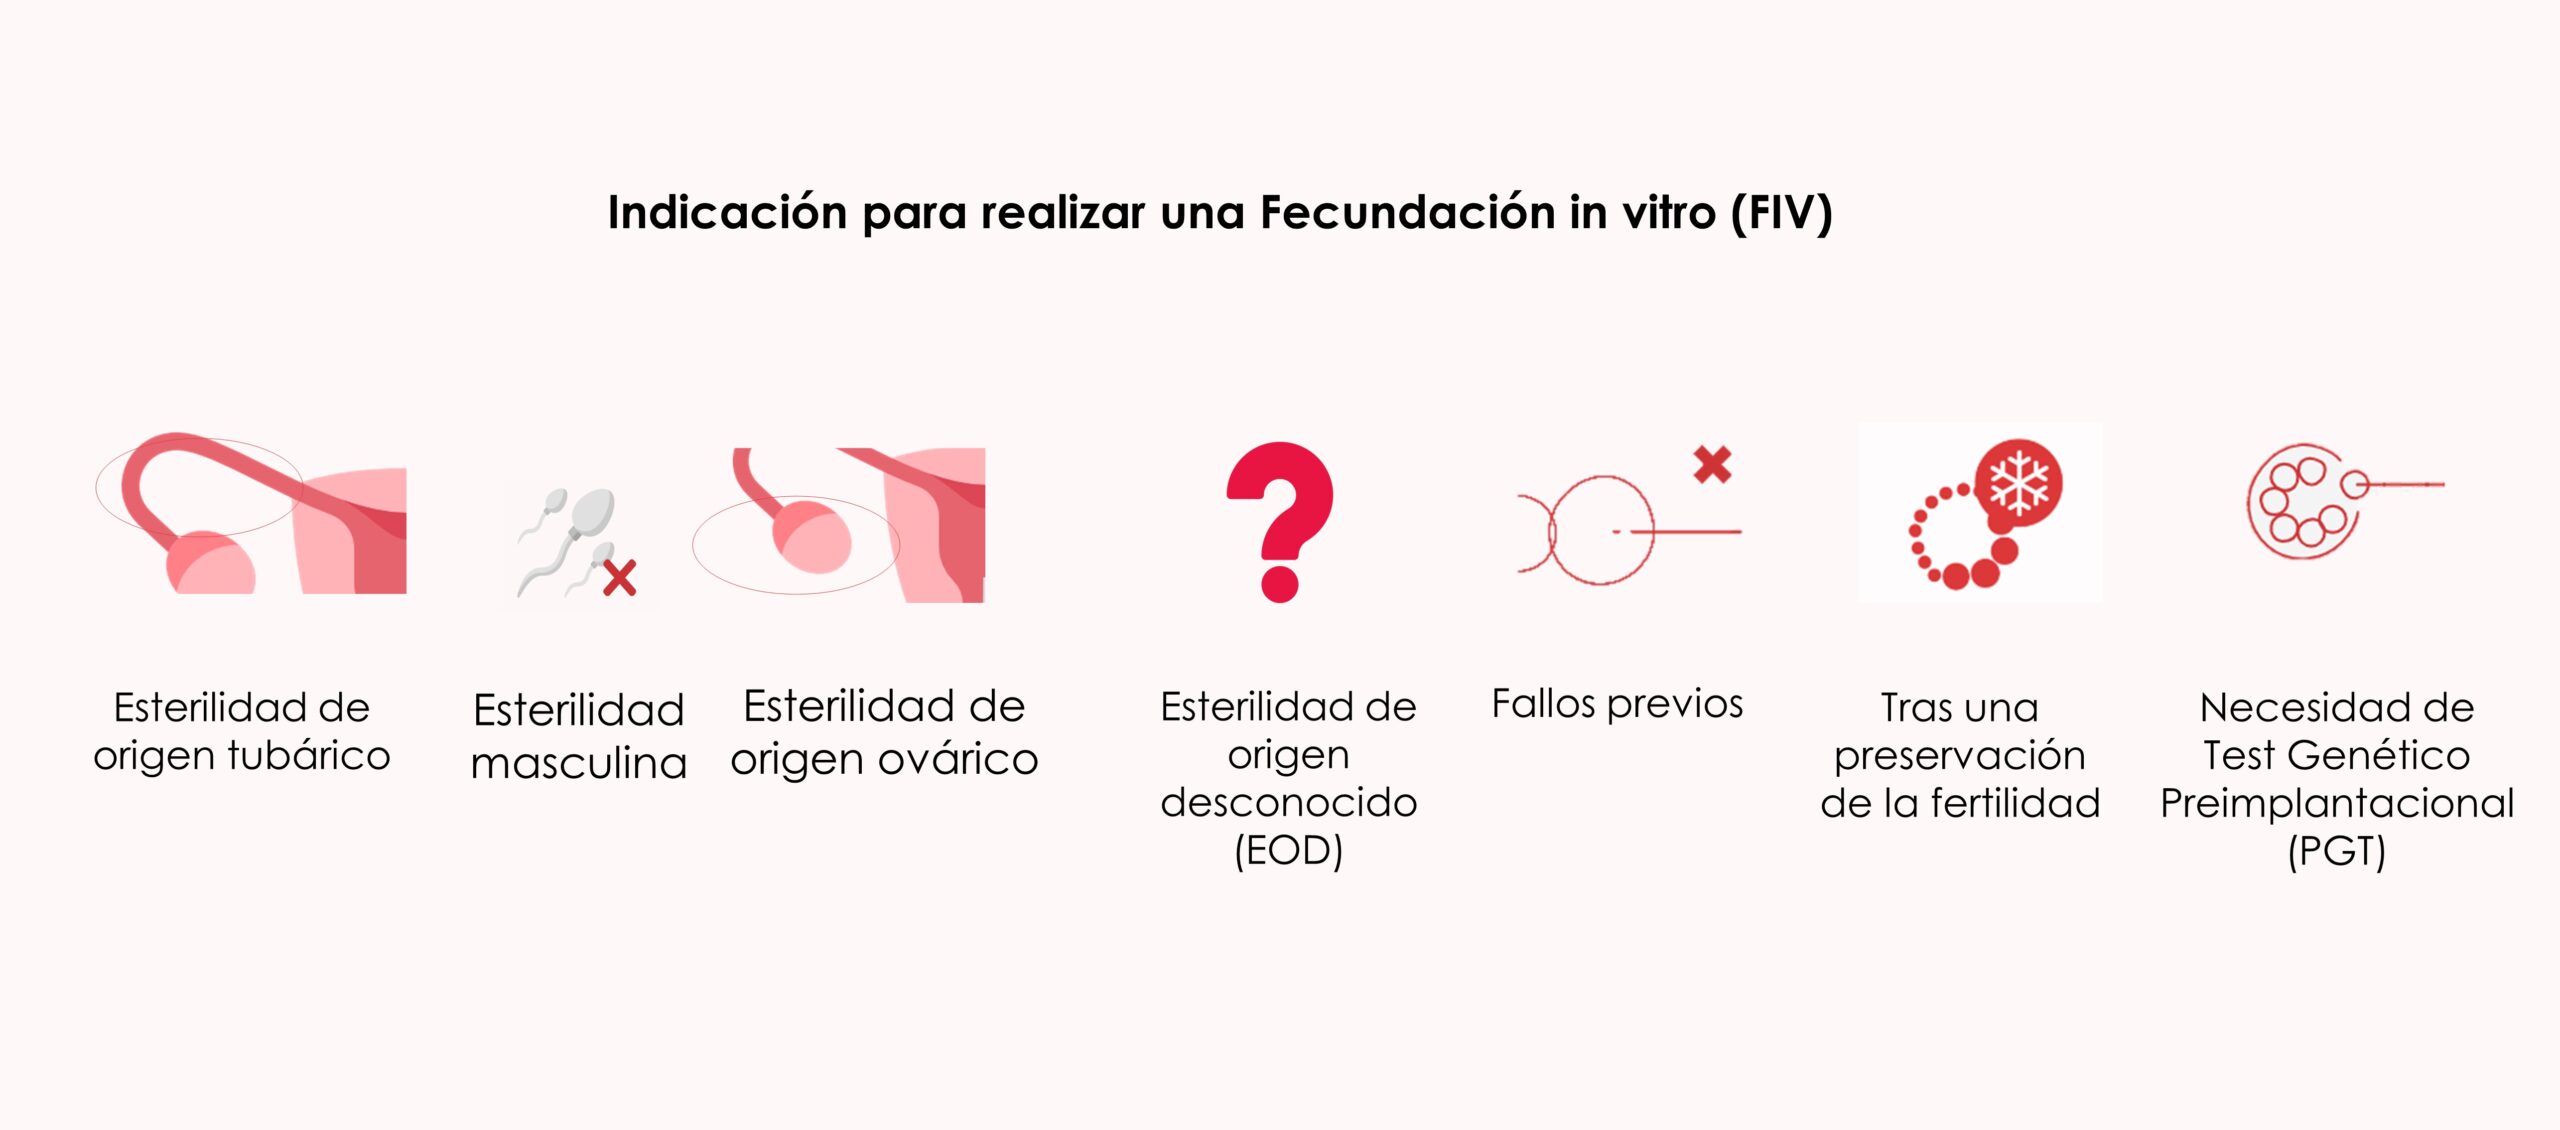 Indicaciones para realizar una Fecundación in vitro (FIV)